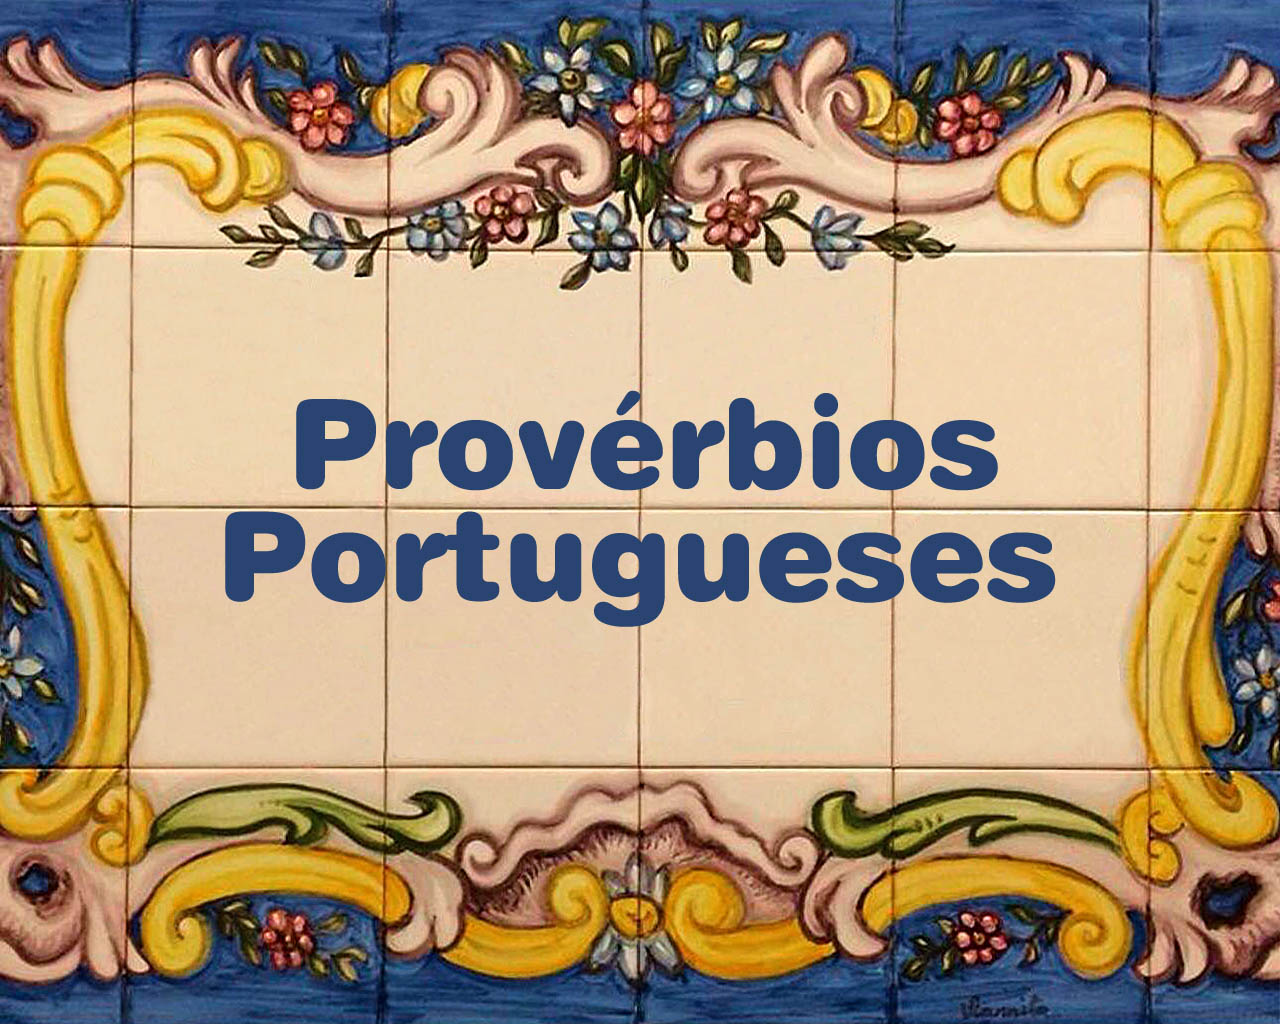 Sabedoria Popular em 30 Provérbios Portugueses